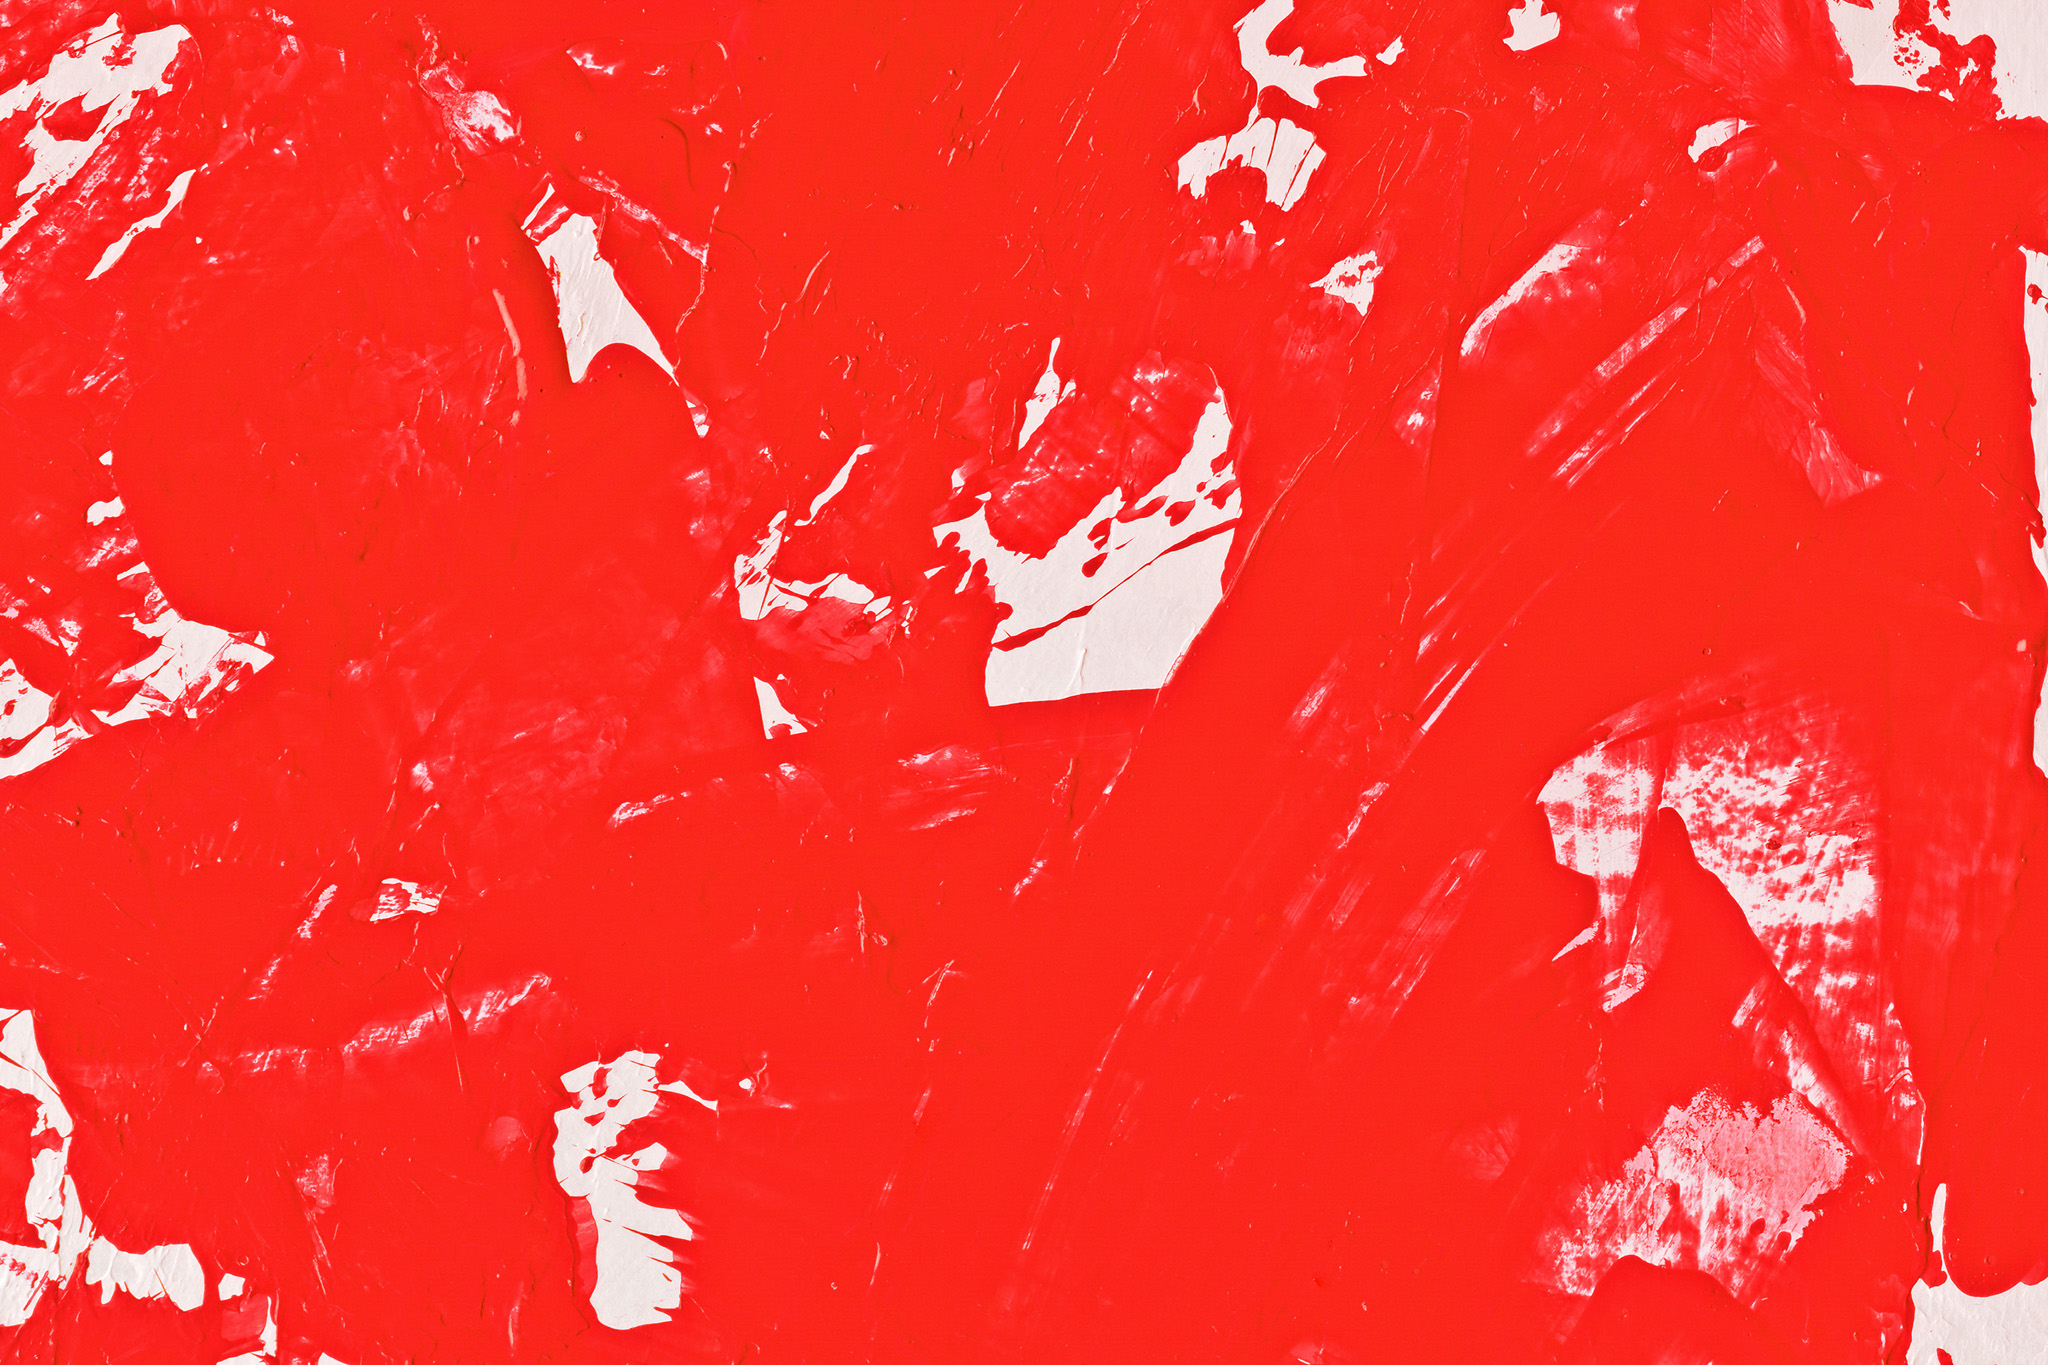 背景が赤色のかっこいい壁紙 の画像素材を無料ダウンロード 1 フリー素材 Beiz Images